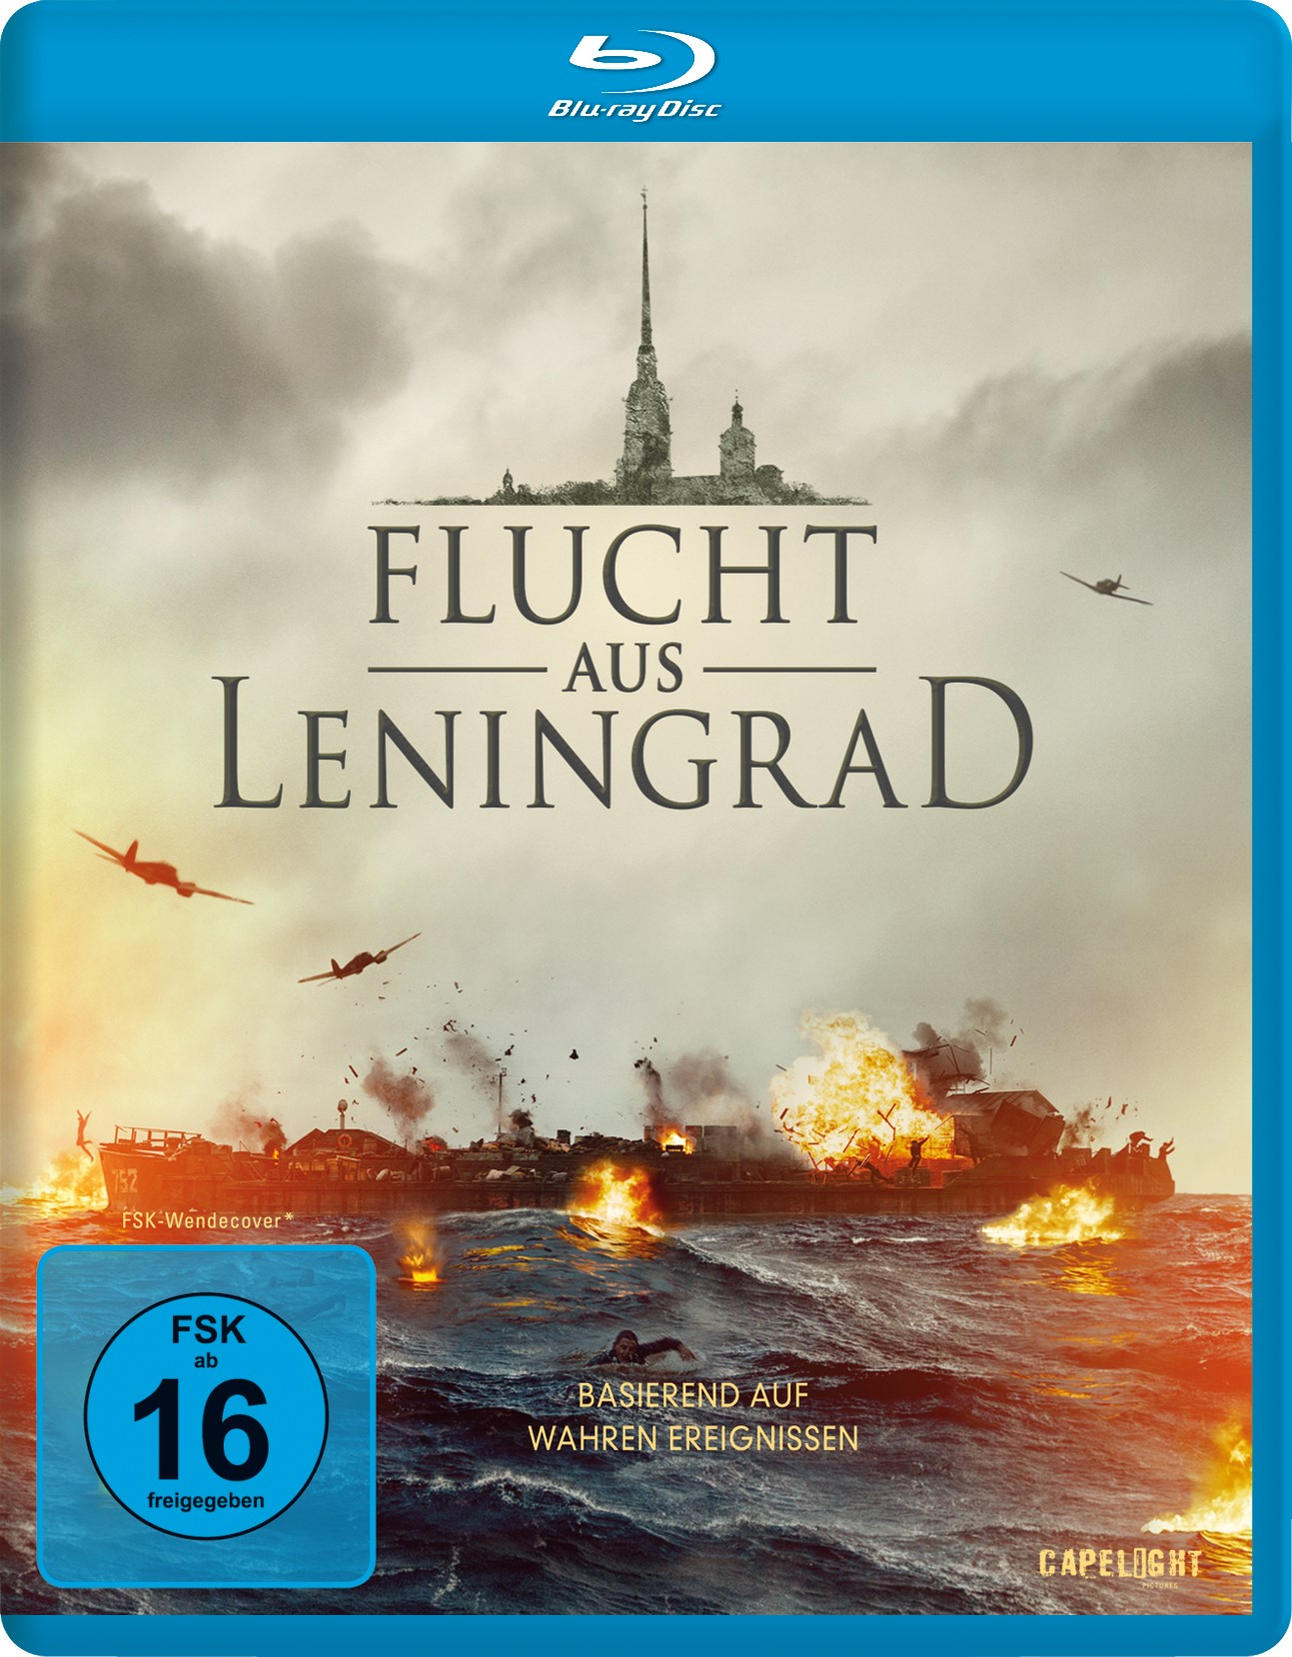 Flucht aus Blu-ray Leningrad